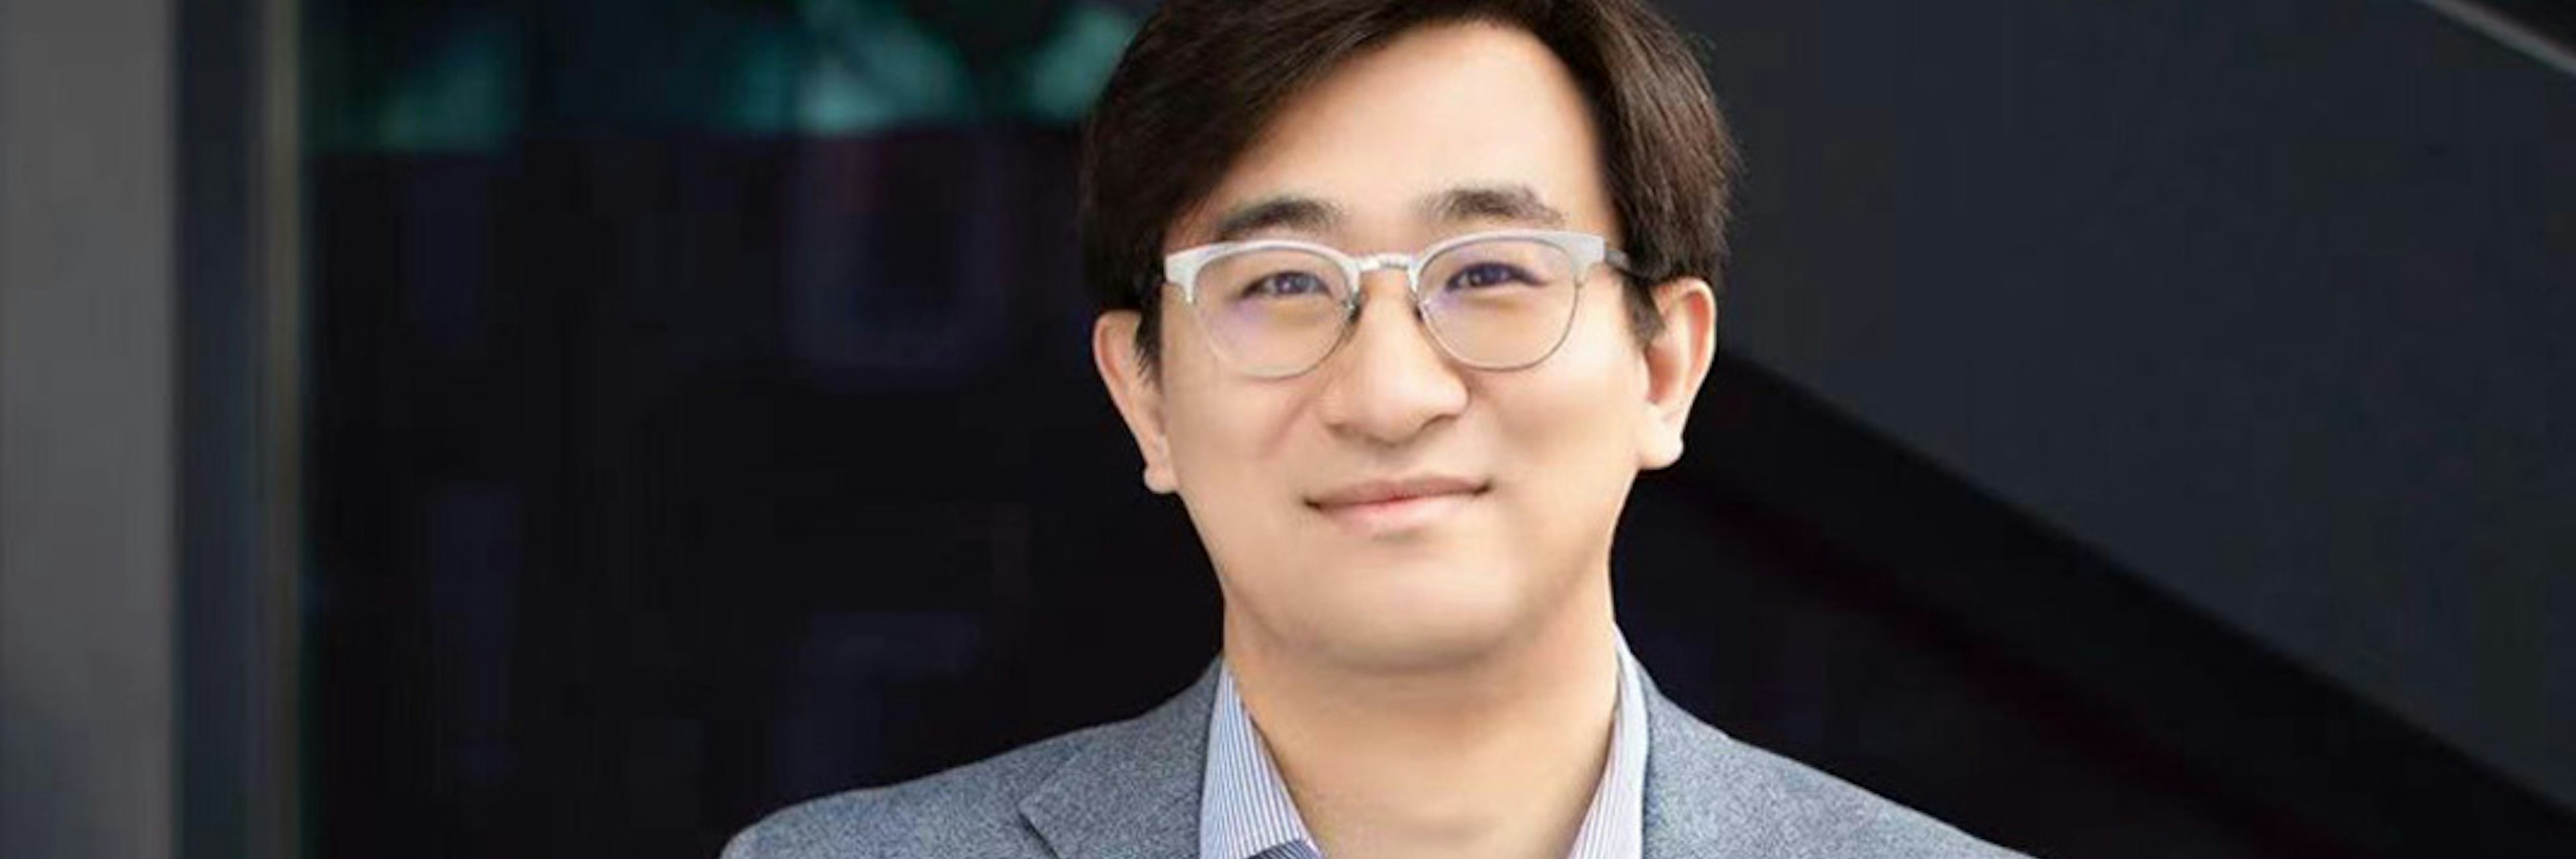 Rick Hao, partner at Speedinvest